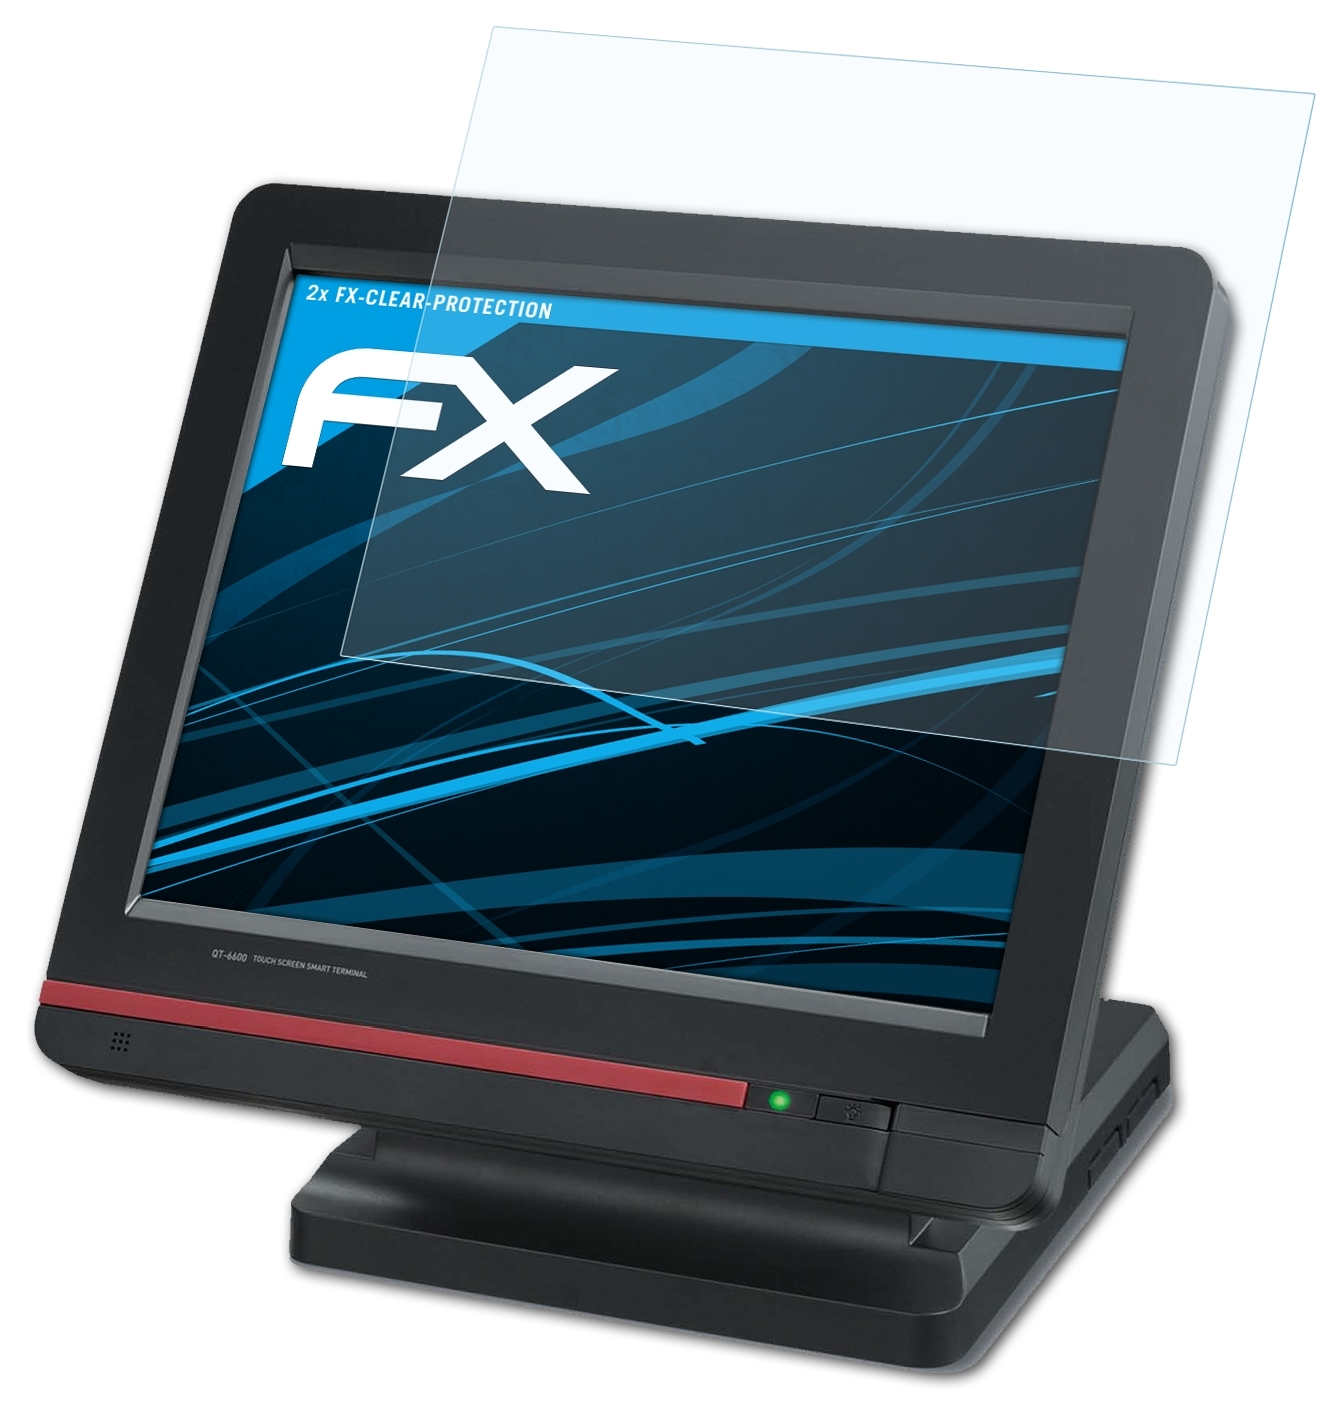 ATFOLIX 2x FX-Clear Displayschutz(für QT-6600) Casio